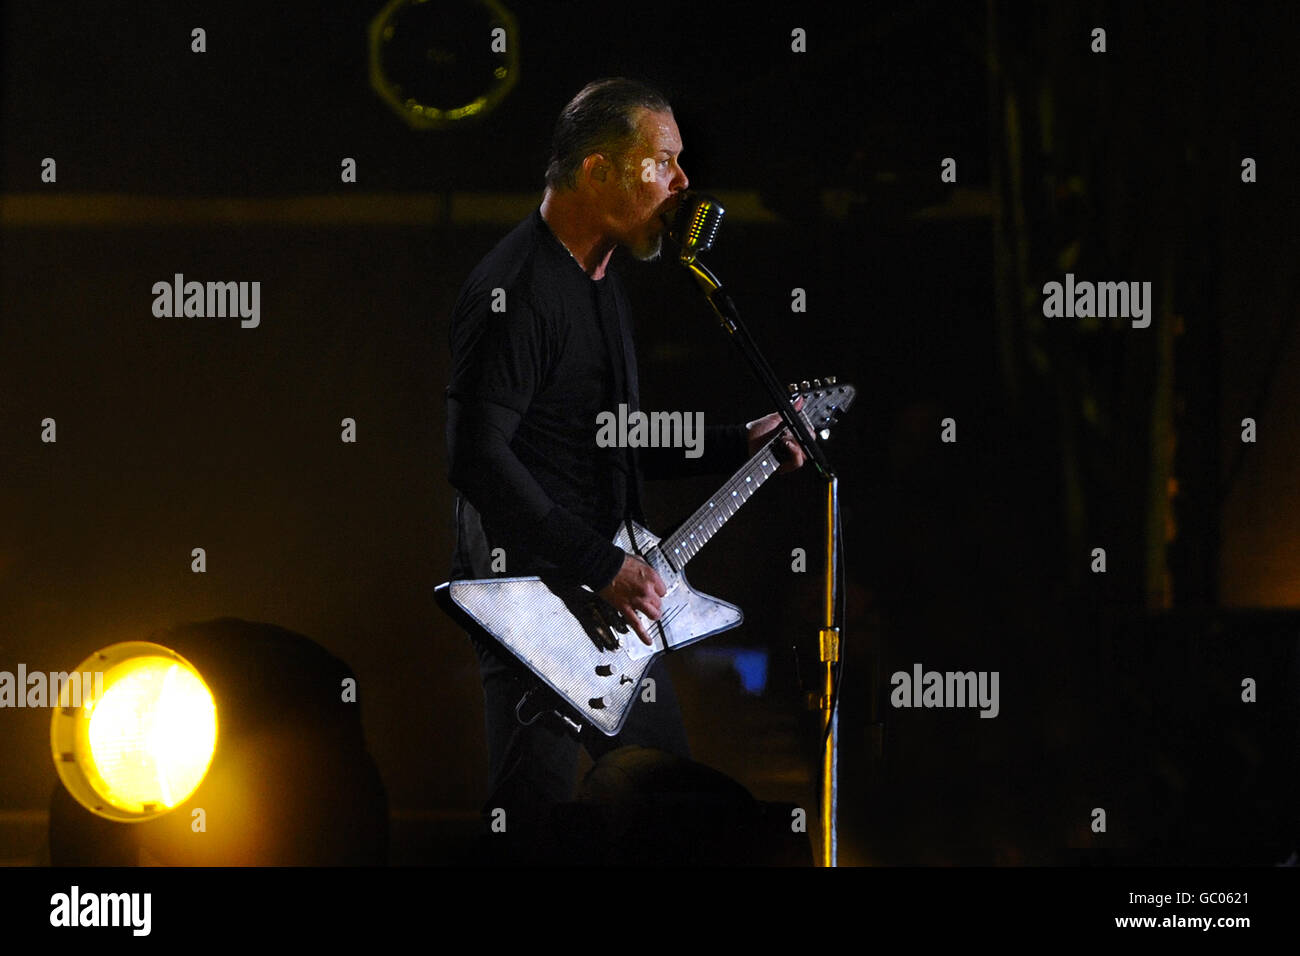 James Hetfield von Metallica spielt live auf der Bühne am 2. Tag des Sonisphere Festivals im Knebworth. Stockfoto